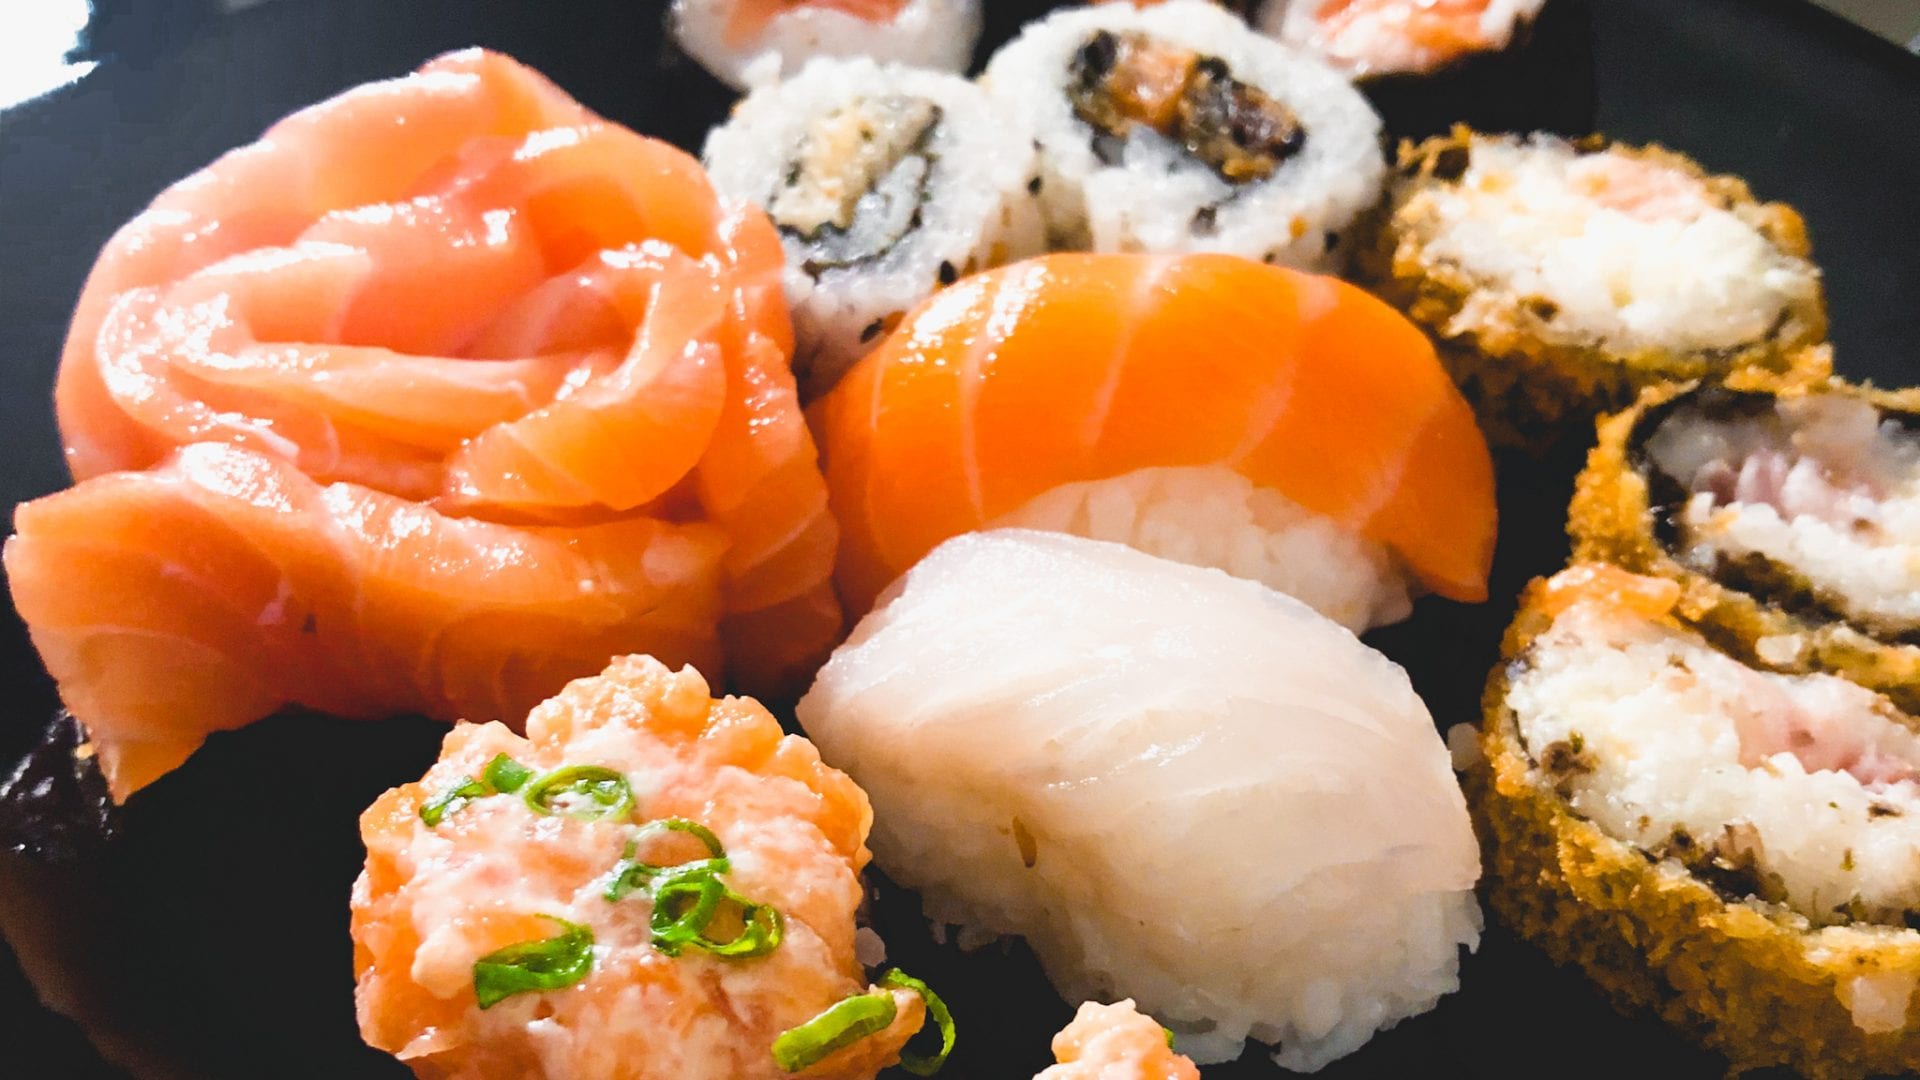 Riotho é um dos 8 ótimos restaurantes de comida japonesa em Goiânia